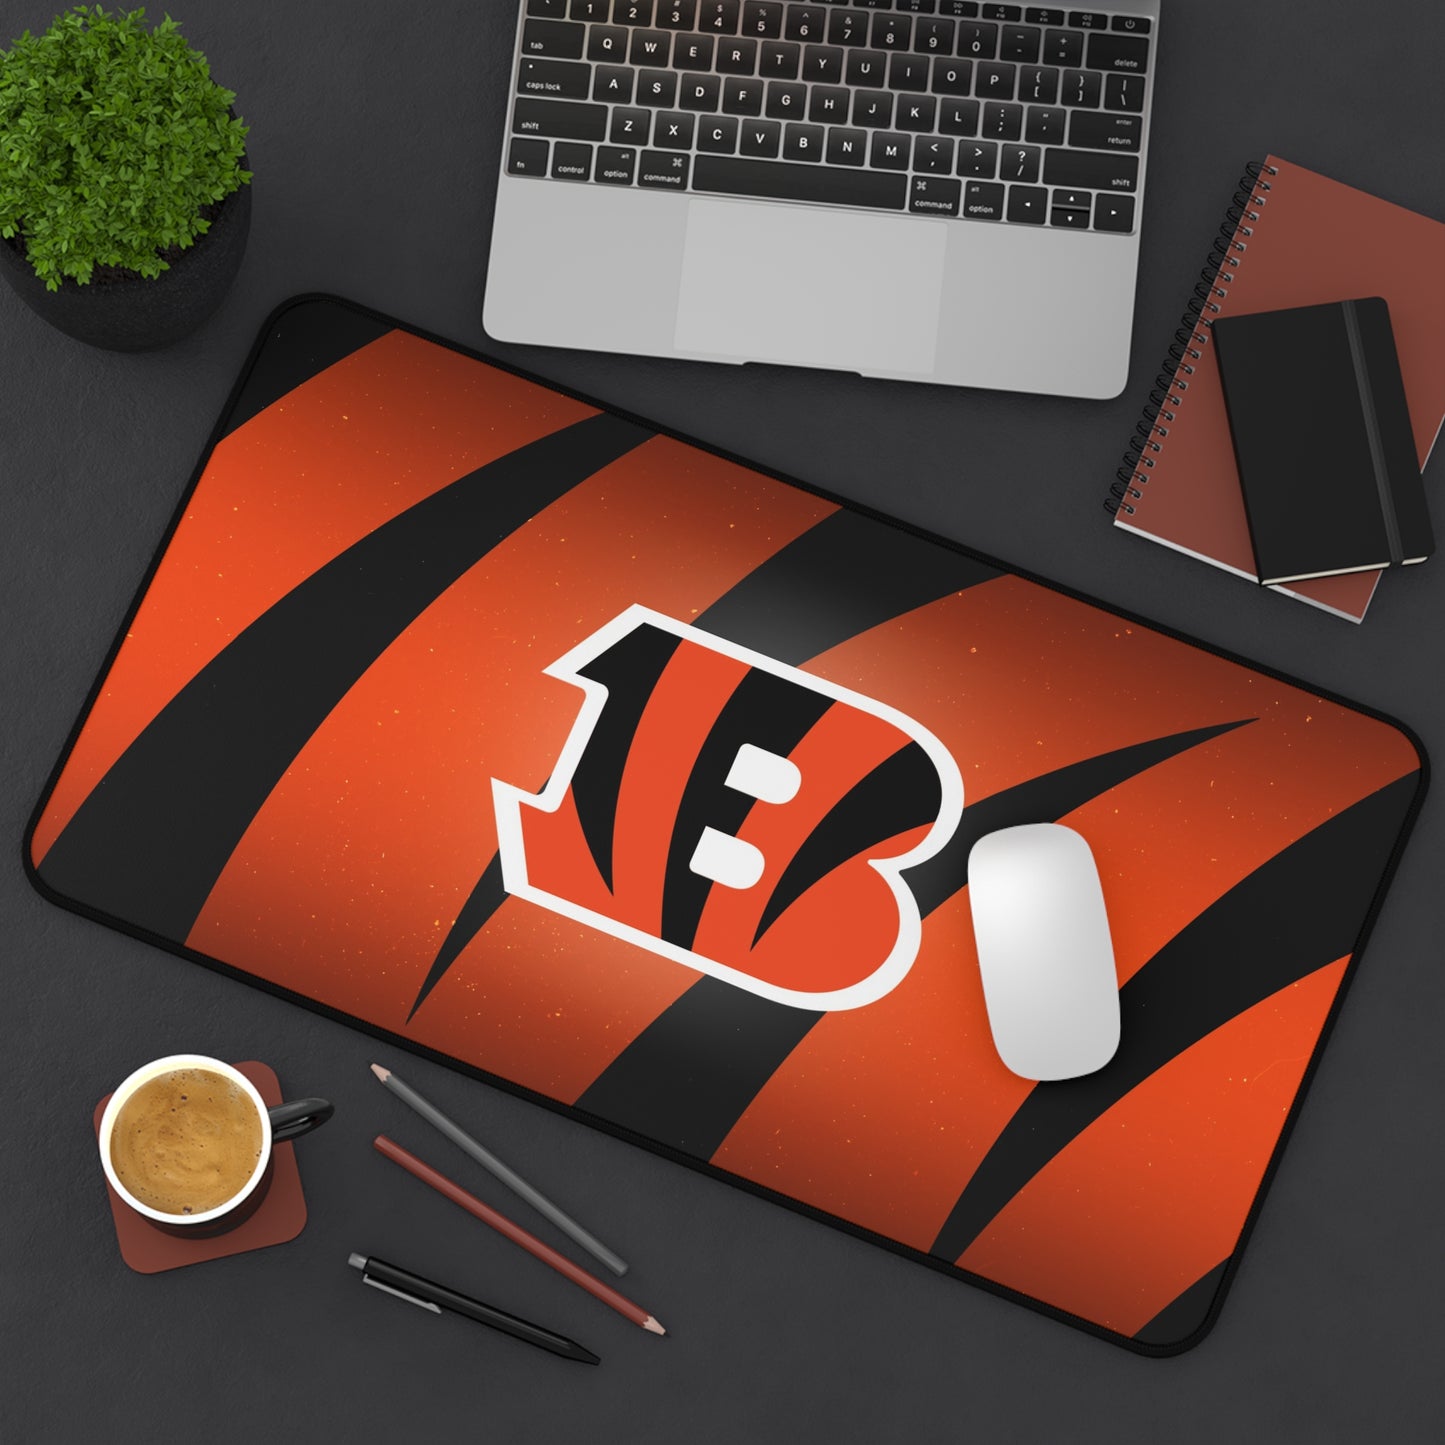 Cincinnati Bengals NFL Football High Definition Desk Mat Mousepad